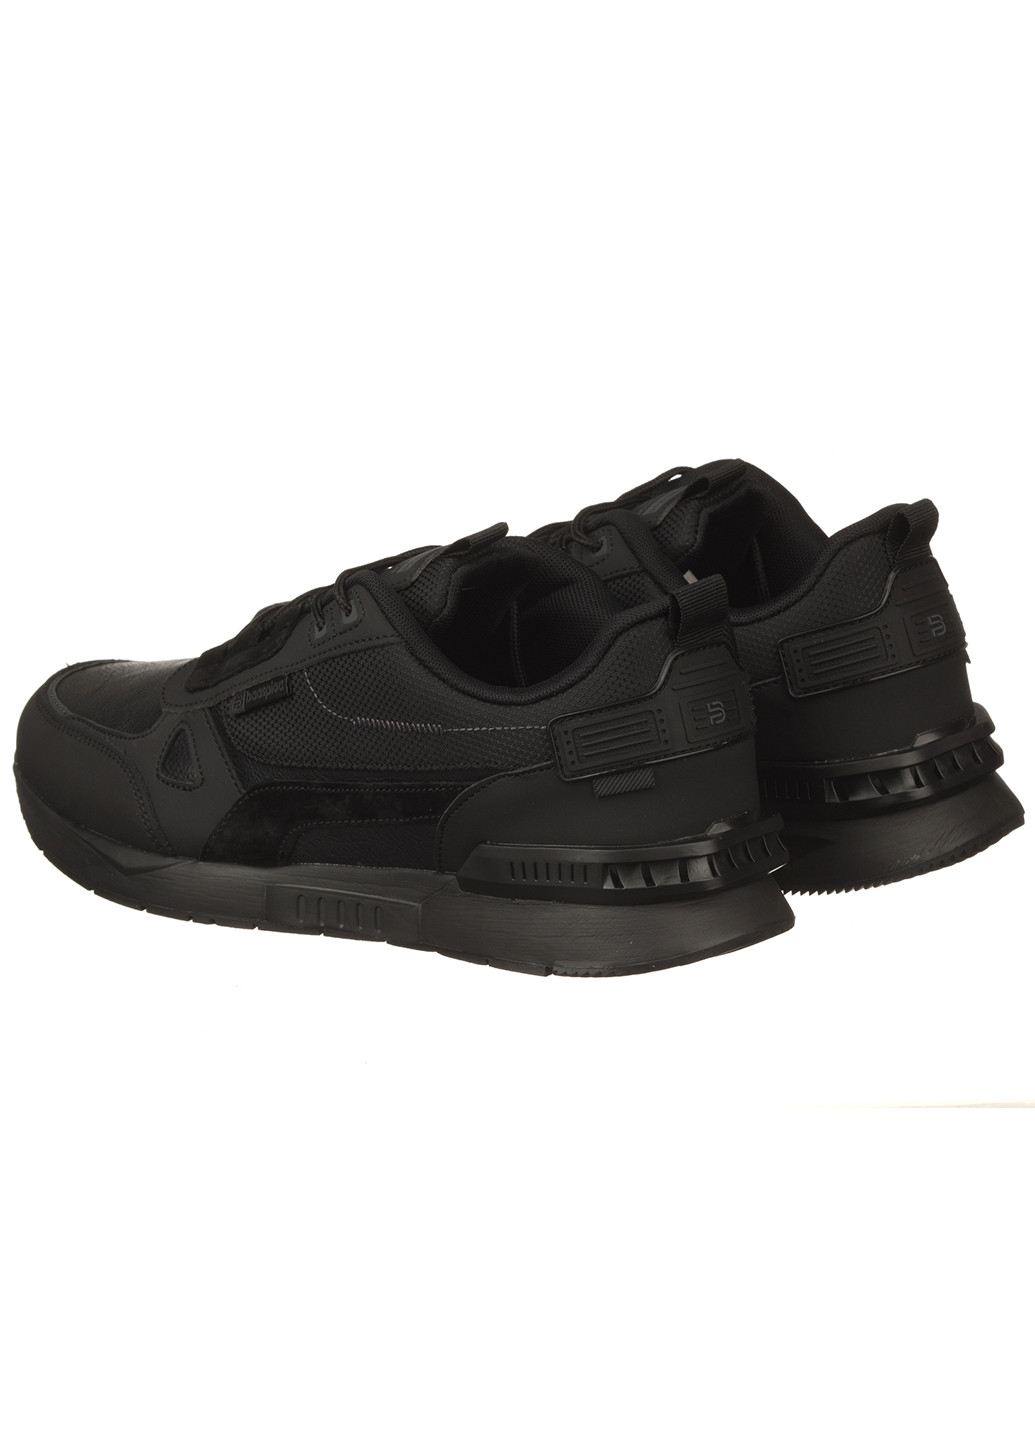 Черные демисезонные мужские кроссовки с искусственной кожи м7460-1с Baas